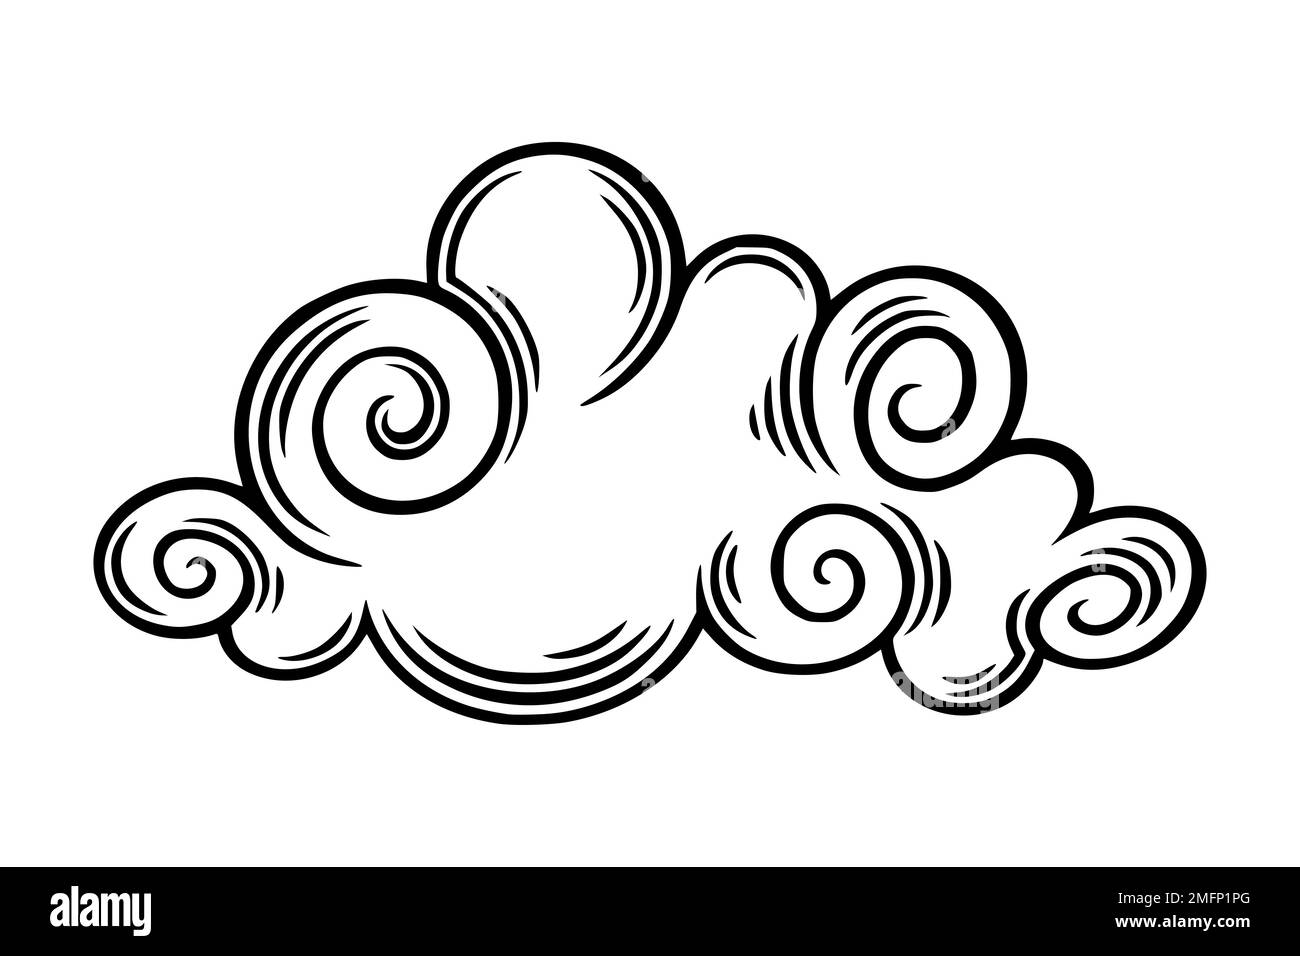 Un nuage chinois dans un style maurique. Nuage de boho gravé pour des motifs asiatiques festifs. Illustration vectorielle isolée sur fond blanc Illustration de Vecteur